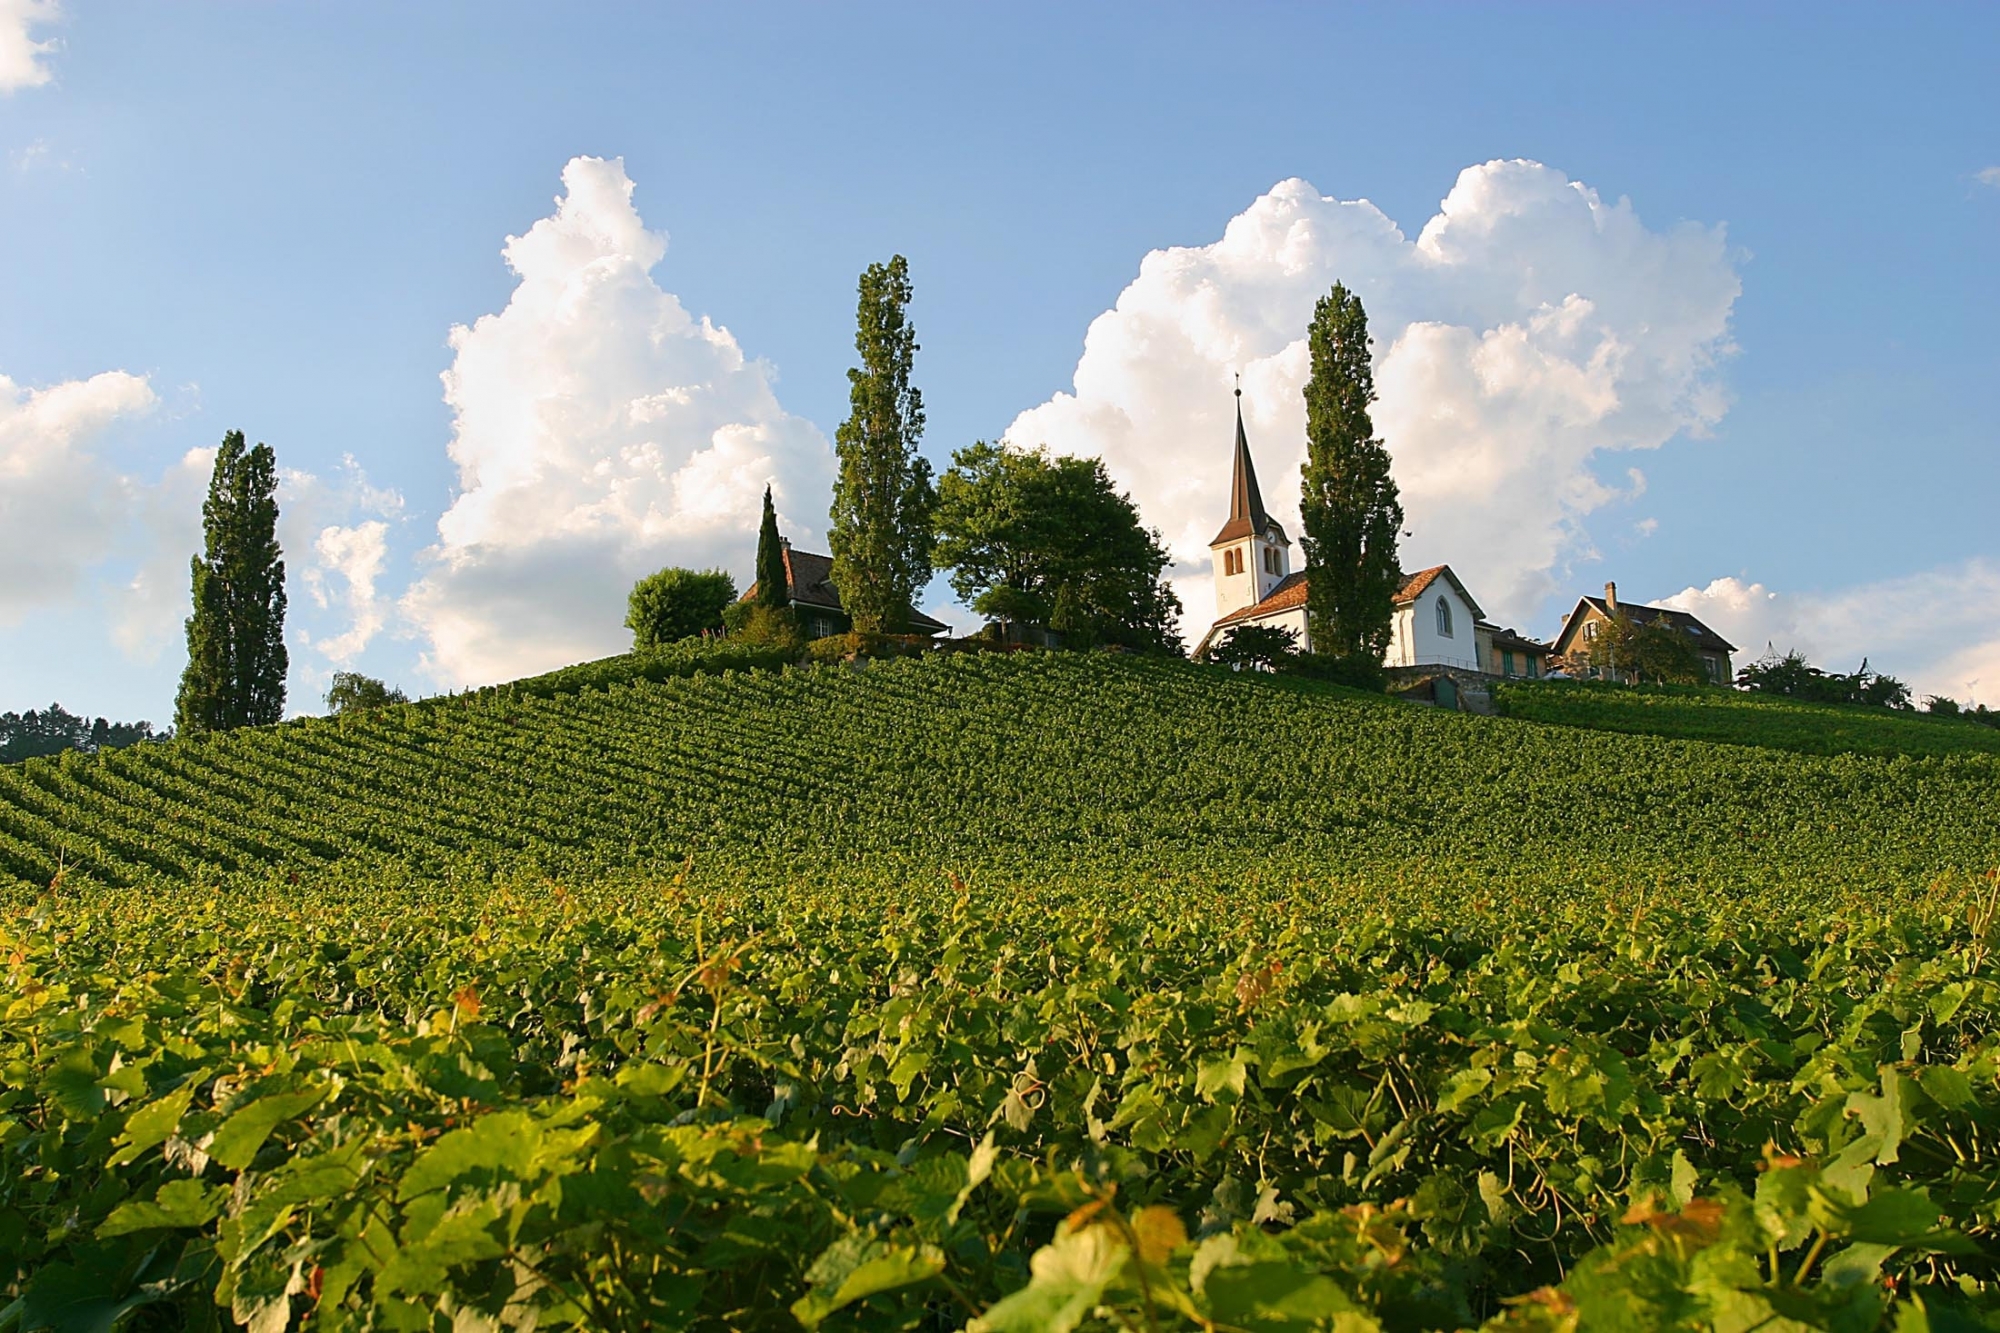 En 2003, le crépi de l'église avait été rénové. le badigeon contenait alors un ingrédient très local: du vin blanc de la réserve communale!